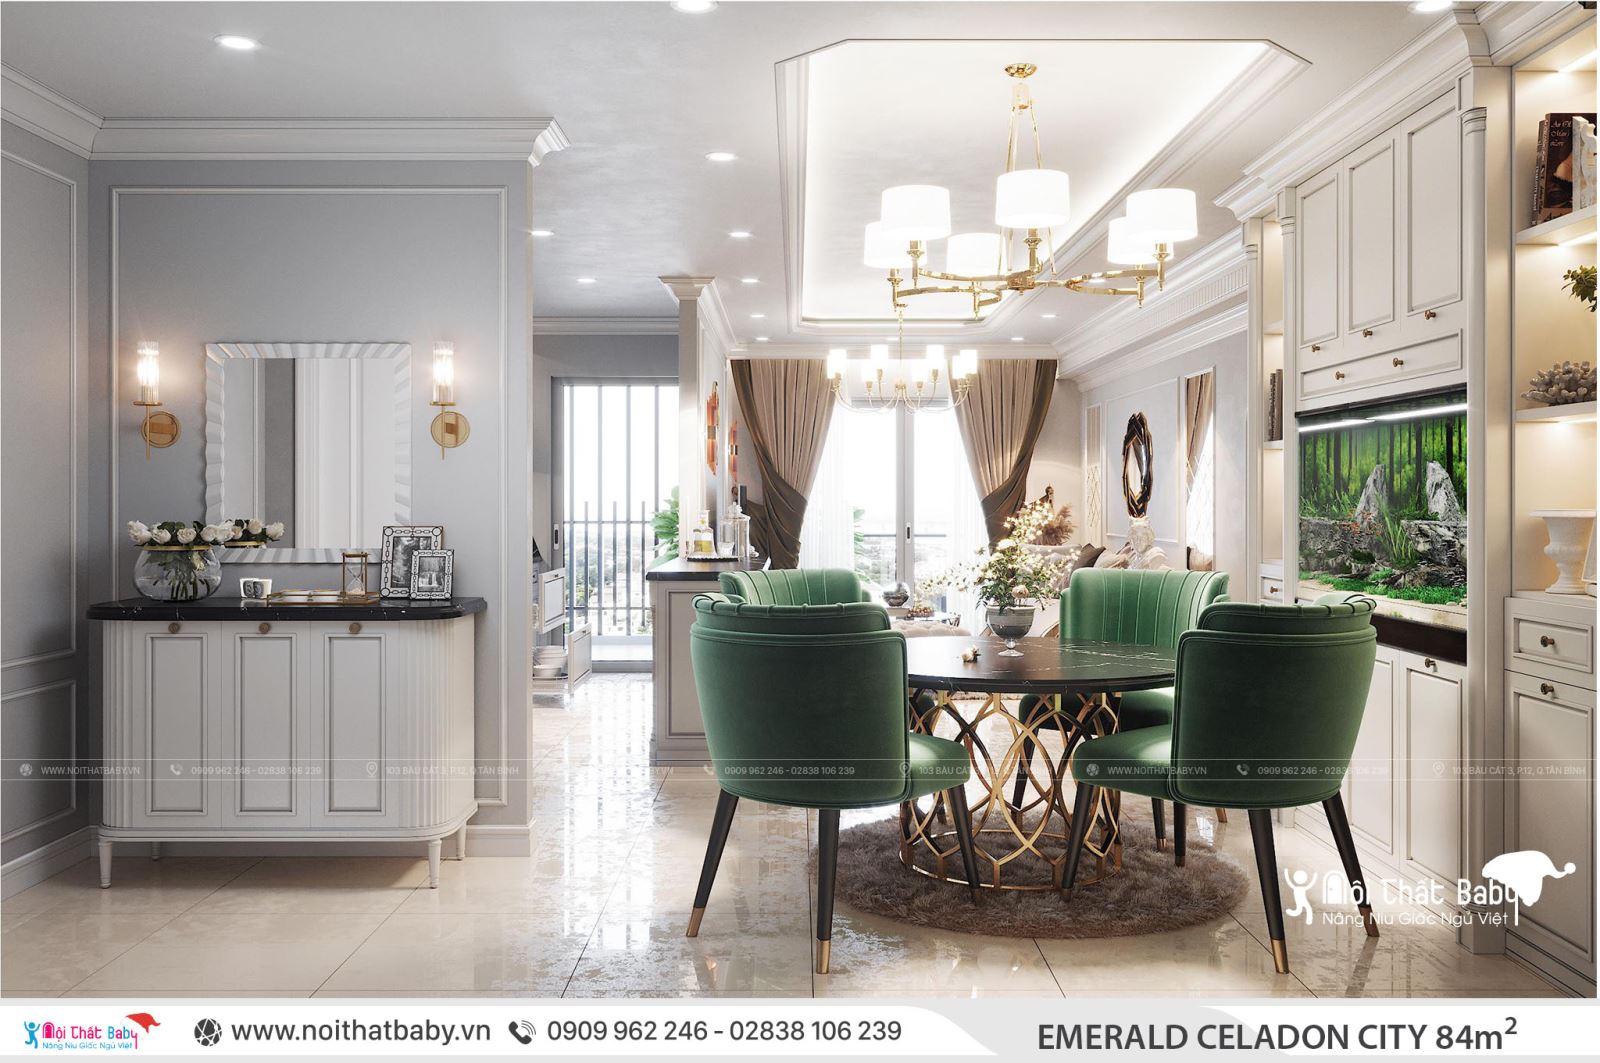 Thiết kế nội thất căn hộ Emerald Celadon City 84m2 2 phòng ngủ